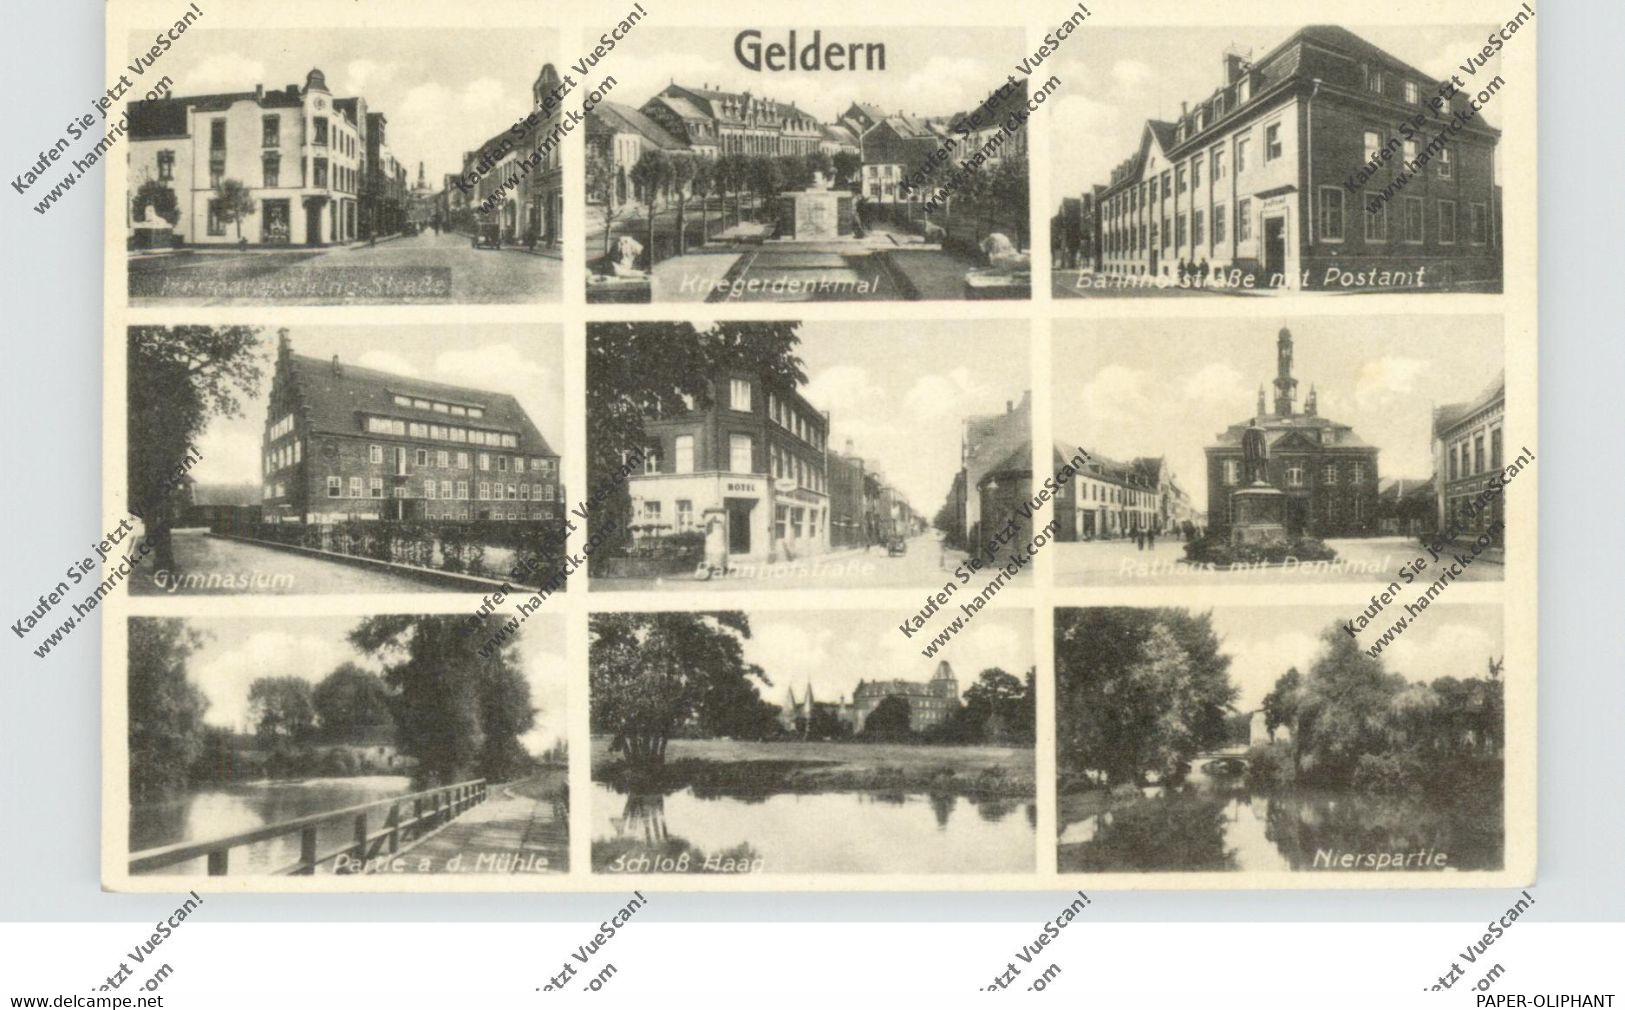 4170 GELDERN, Hermann-Göring-Strasse, Kriegerdenknal, Bahnhofstrasse, Gymnasium, NIerspartie...... - Geldern